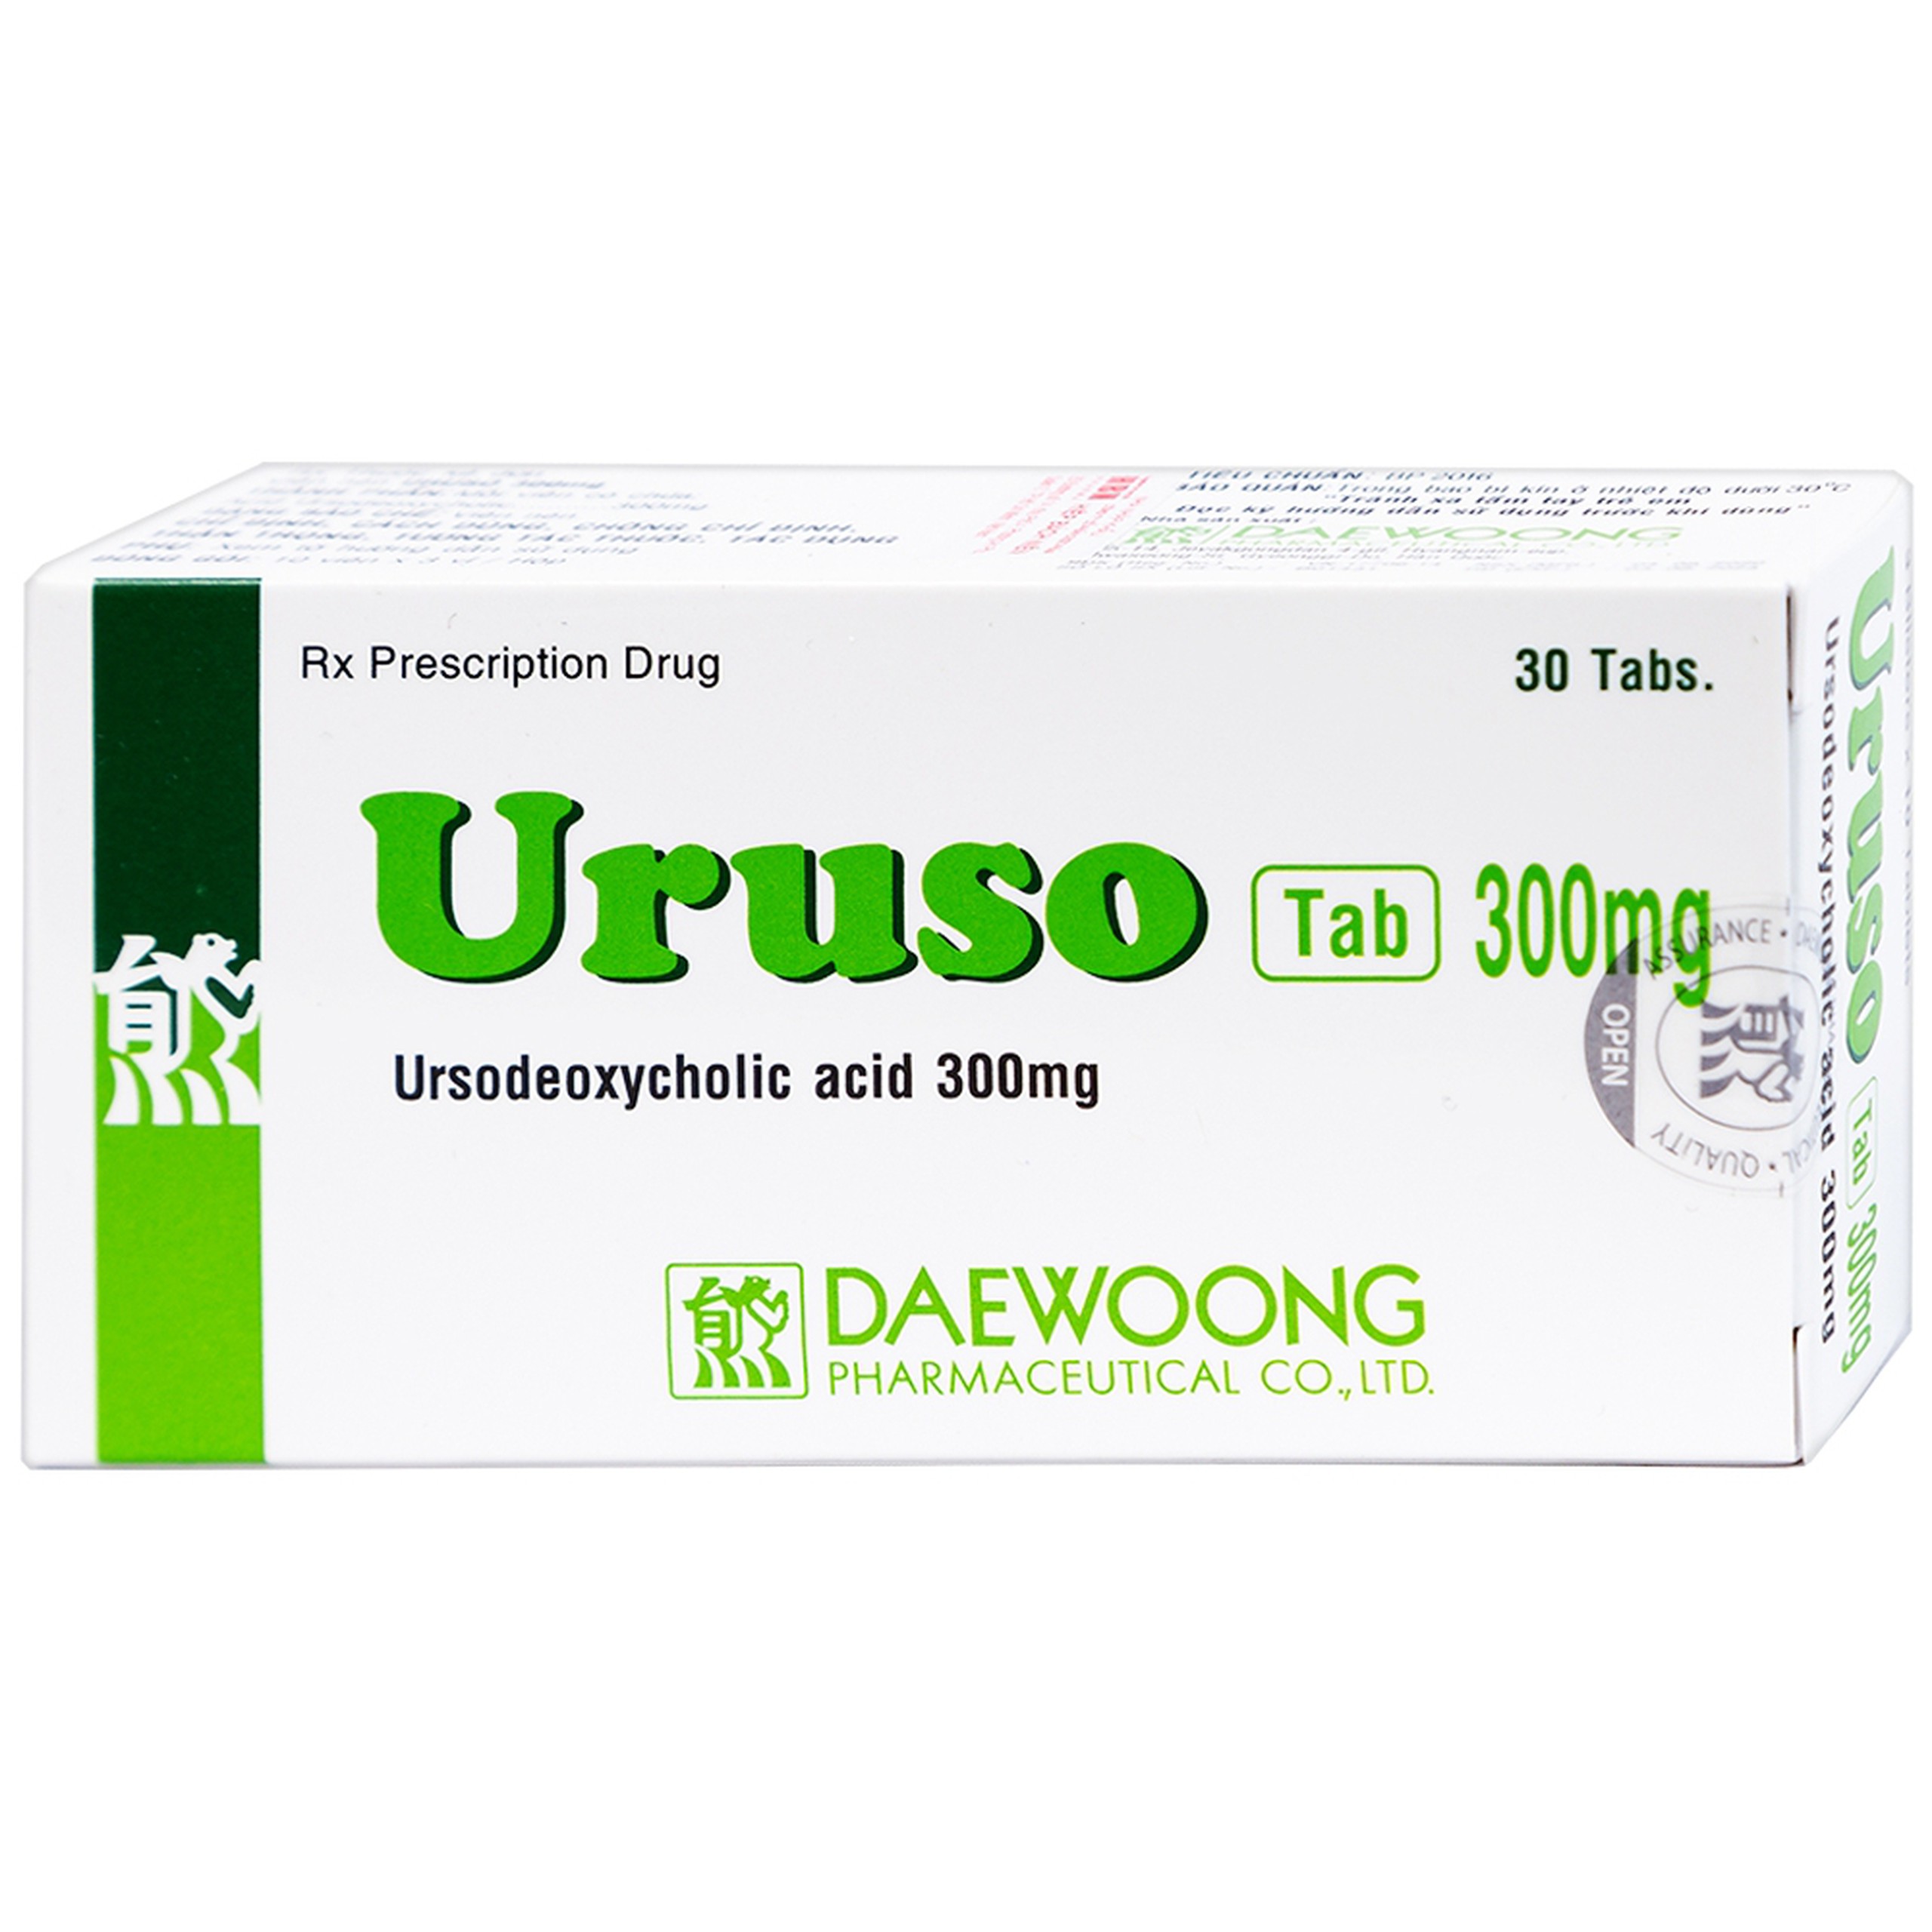 Thuốc Uruso Tab 300mg Daewoong điều trị sỏi mật (3 vỉ x 10 viên)